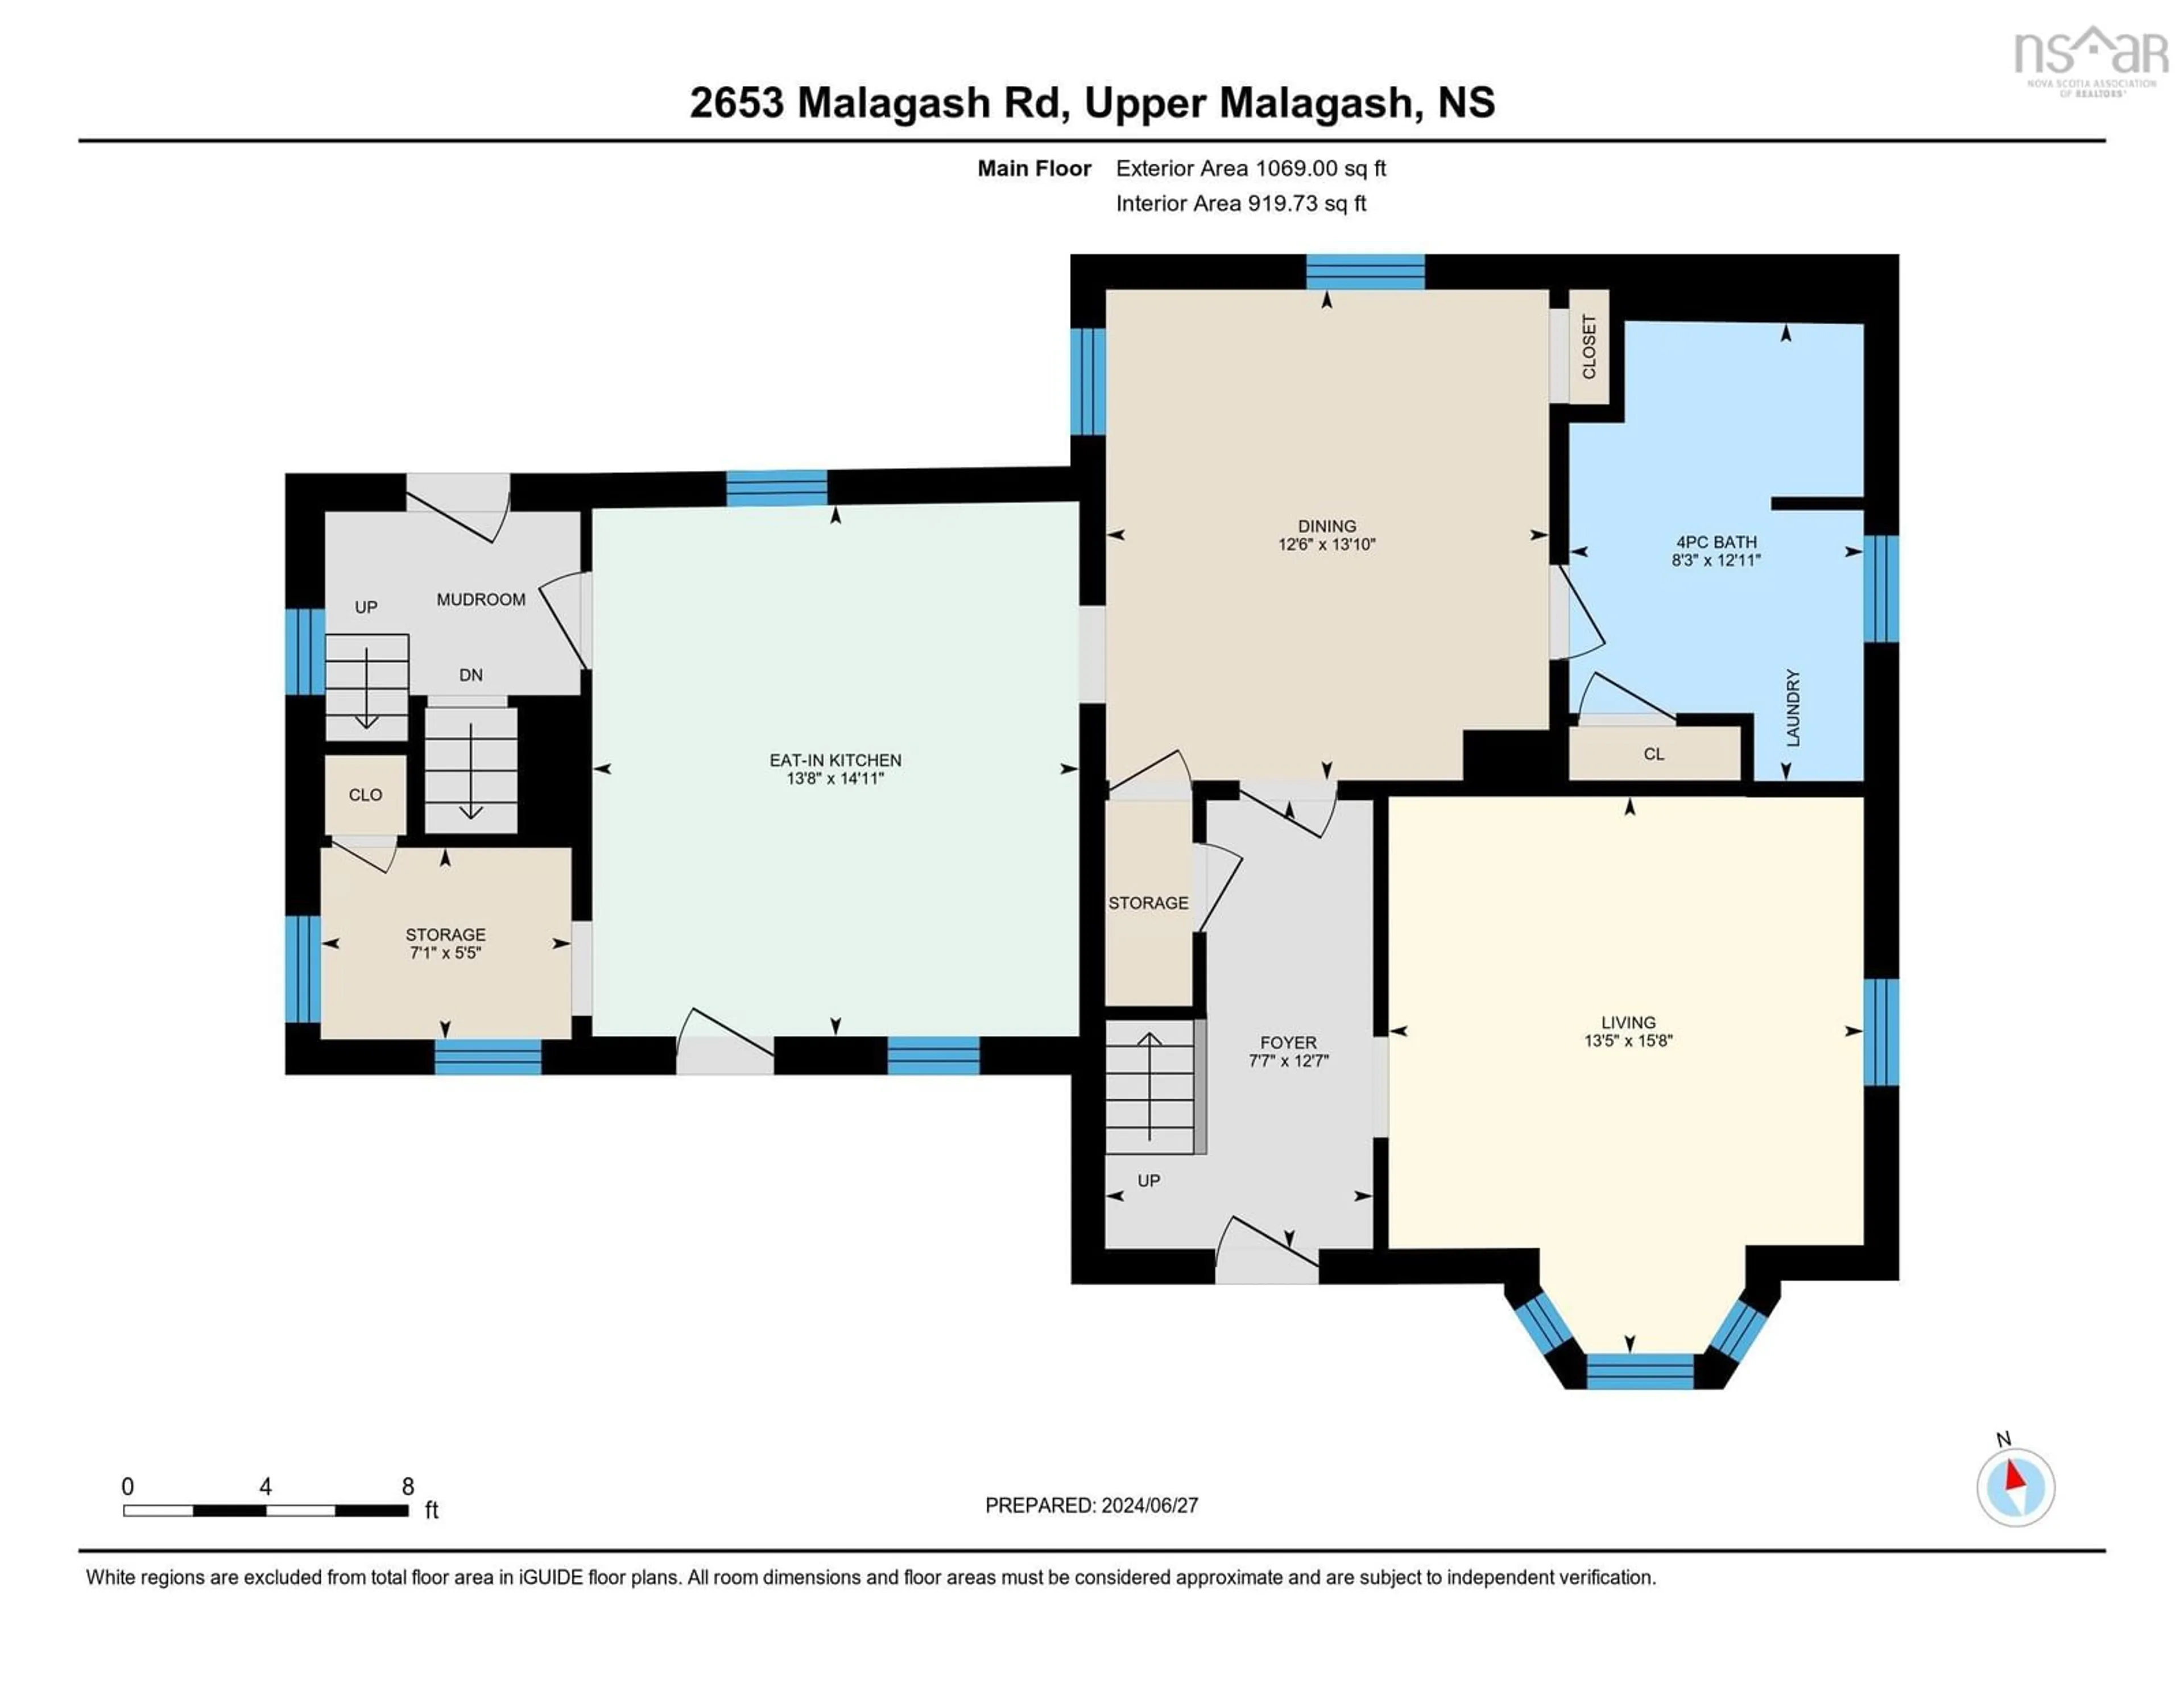 Floor plan for 2653 Malagash Rd, Upper Malagash Nova Scotia B0K 1E0